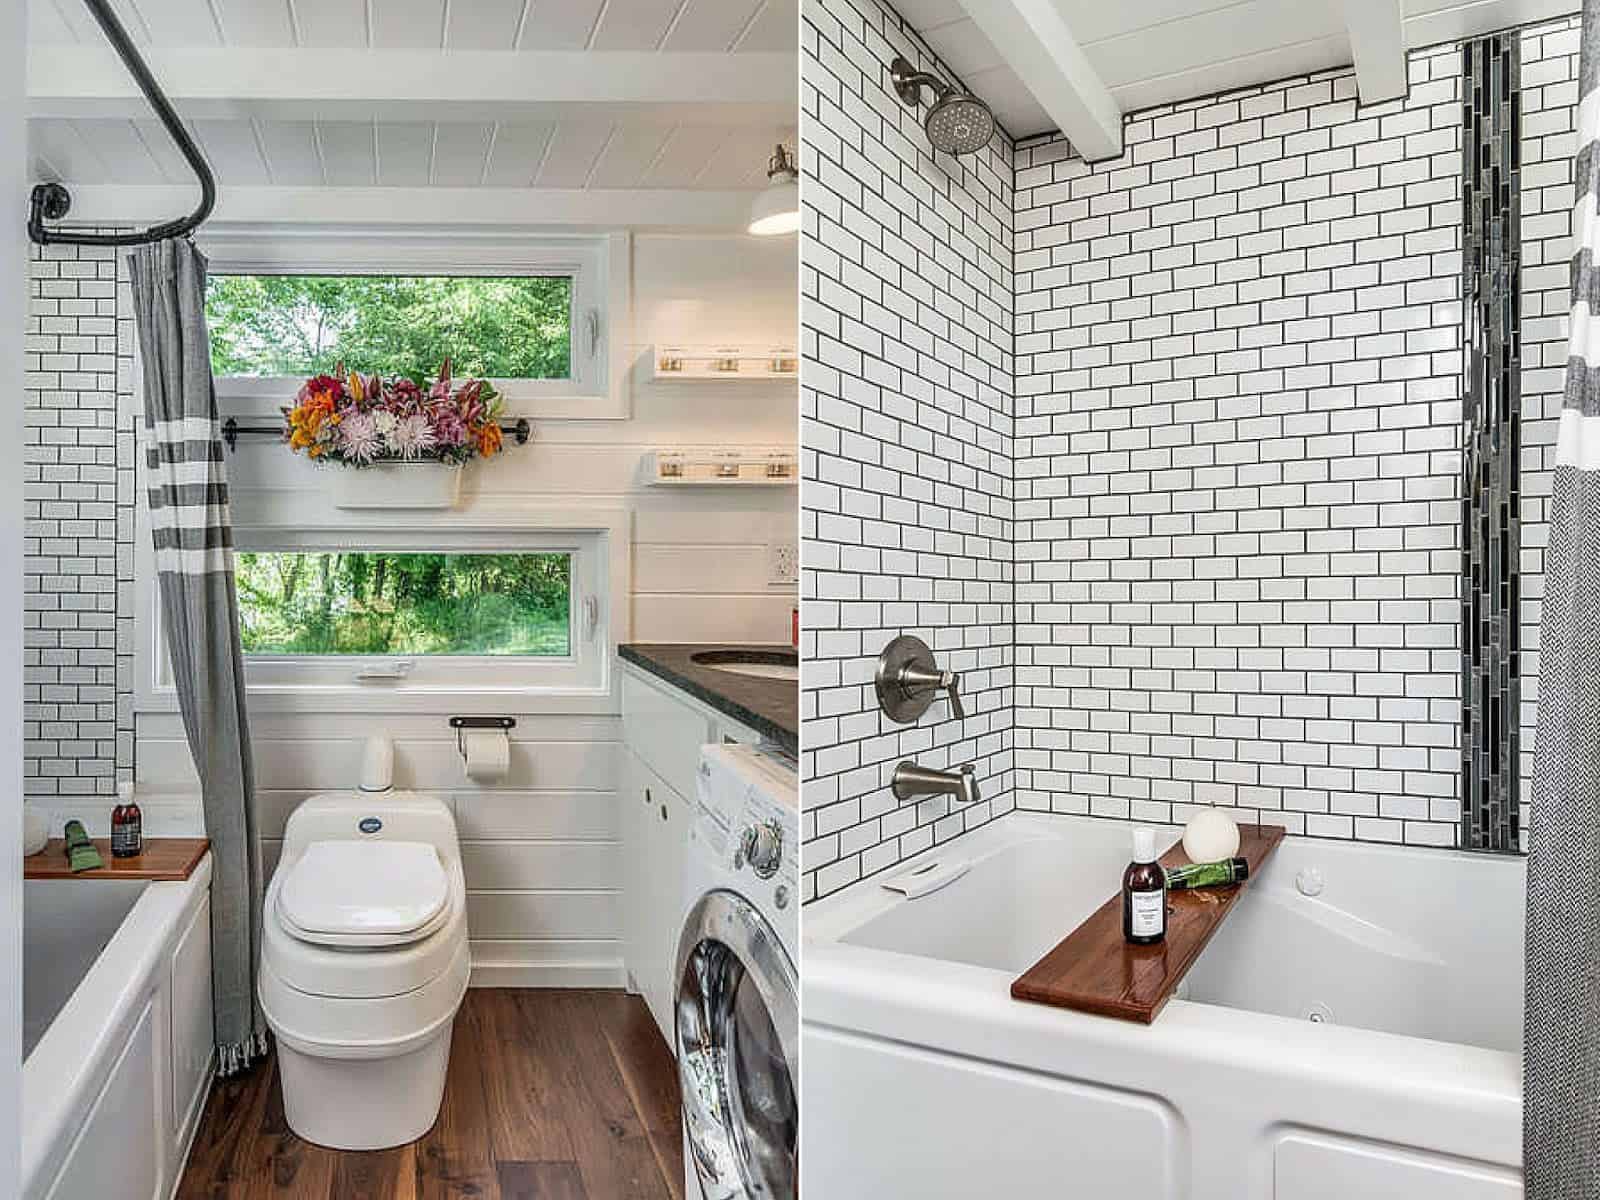 另一个高效的小房子浴室的例子，有浴缸，洗衣机和烘干机。深色木地板与白色木墙以及浴缸周围的地铁瓷砖墙形成了鲜明的对比。